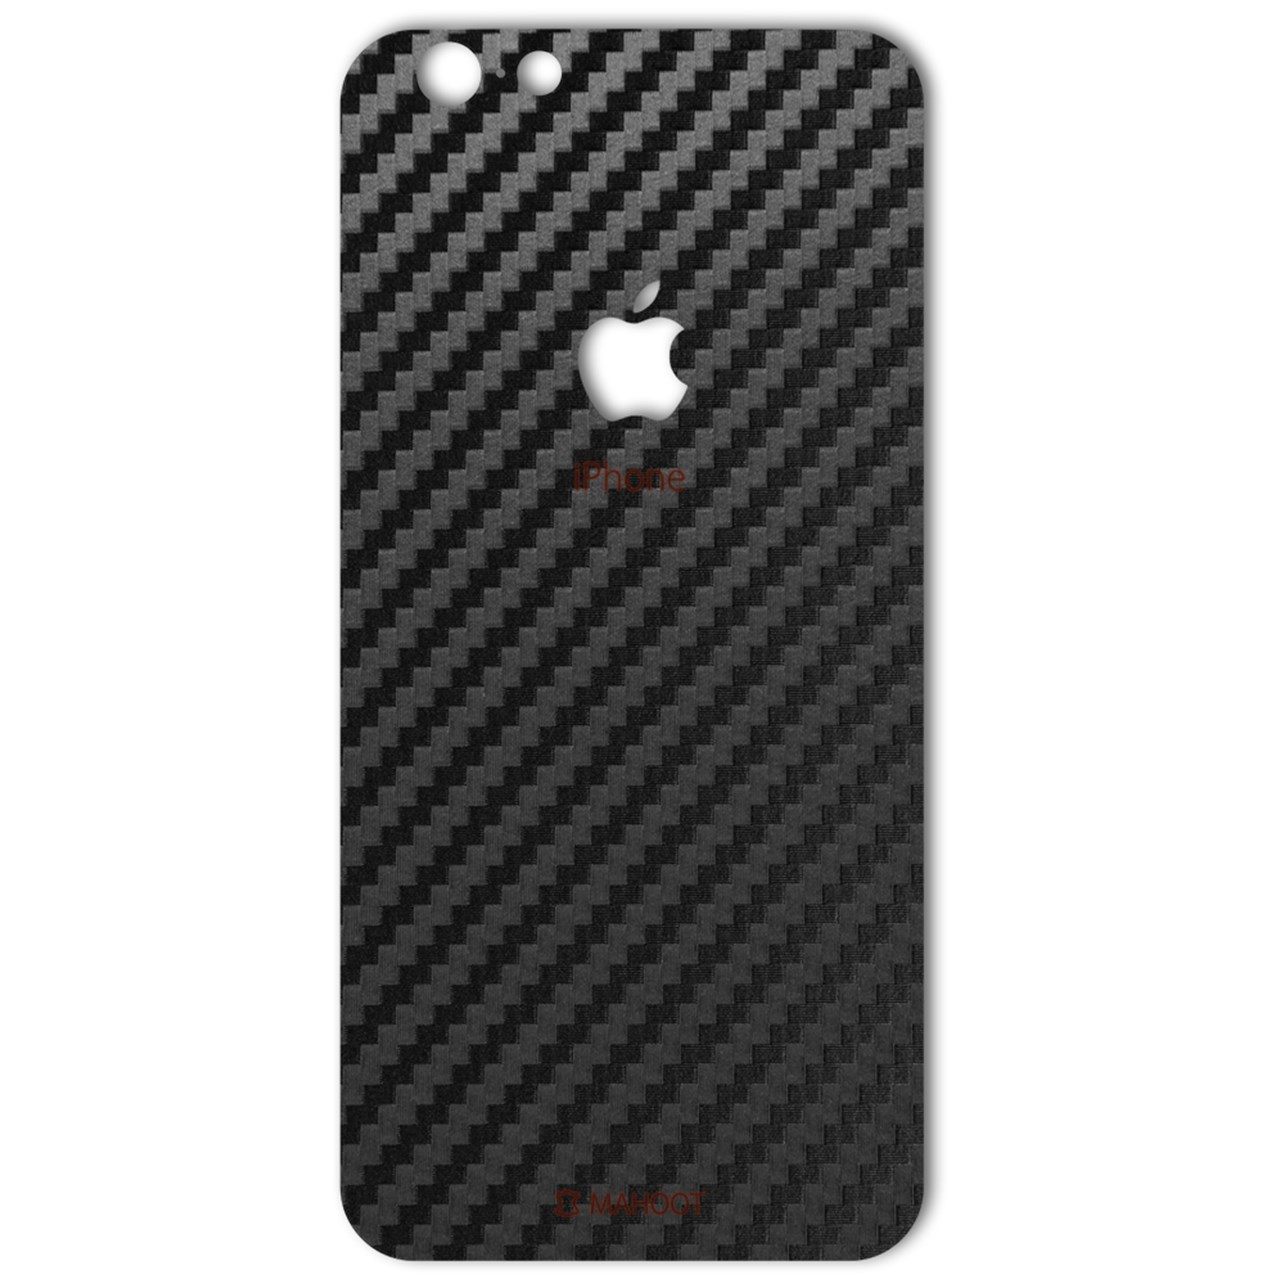 نقد و بررسی برچسب پوششی ماهوت مدل Carbon-fiber Texture مناسب برای گوشی iPhone 6/6s توسط خریداران